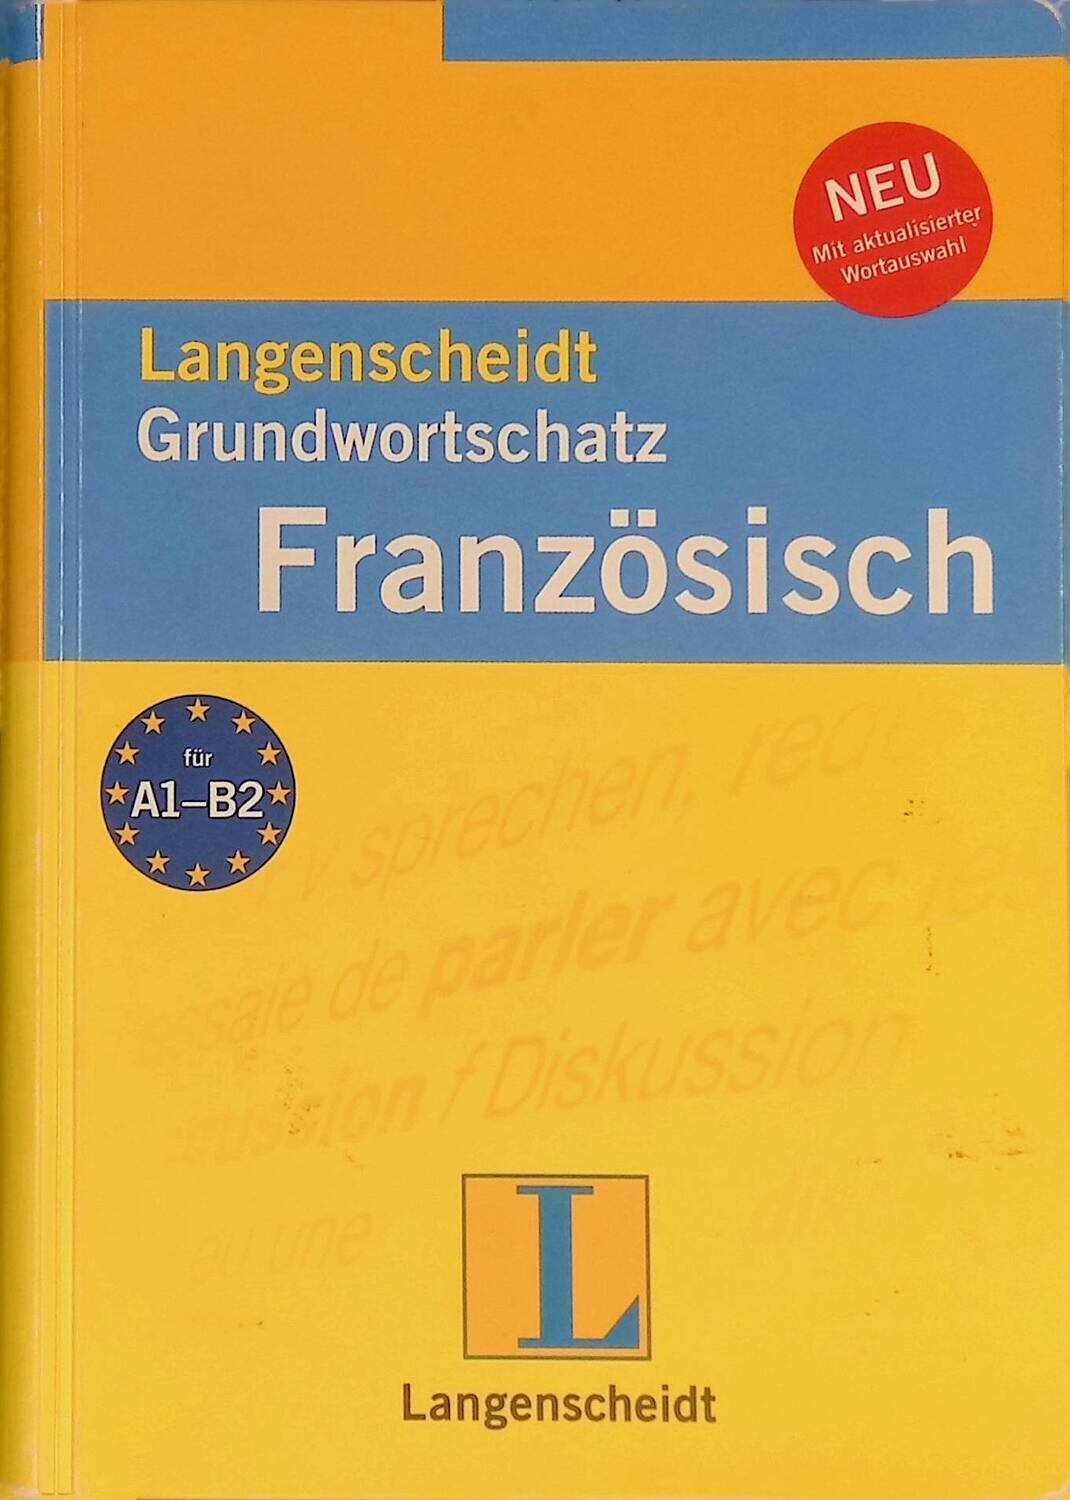 Langenscheidts Grundwortschatz Franzosisch. Mit rund 7000 Wortern; Коллектив авторов